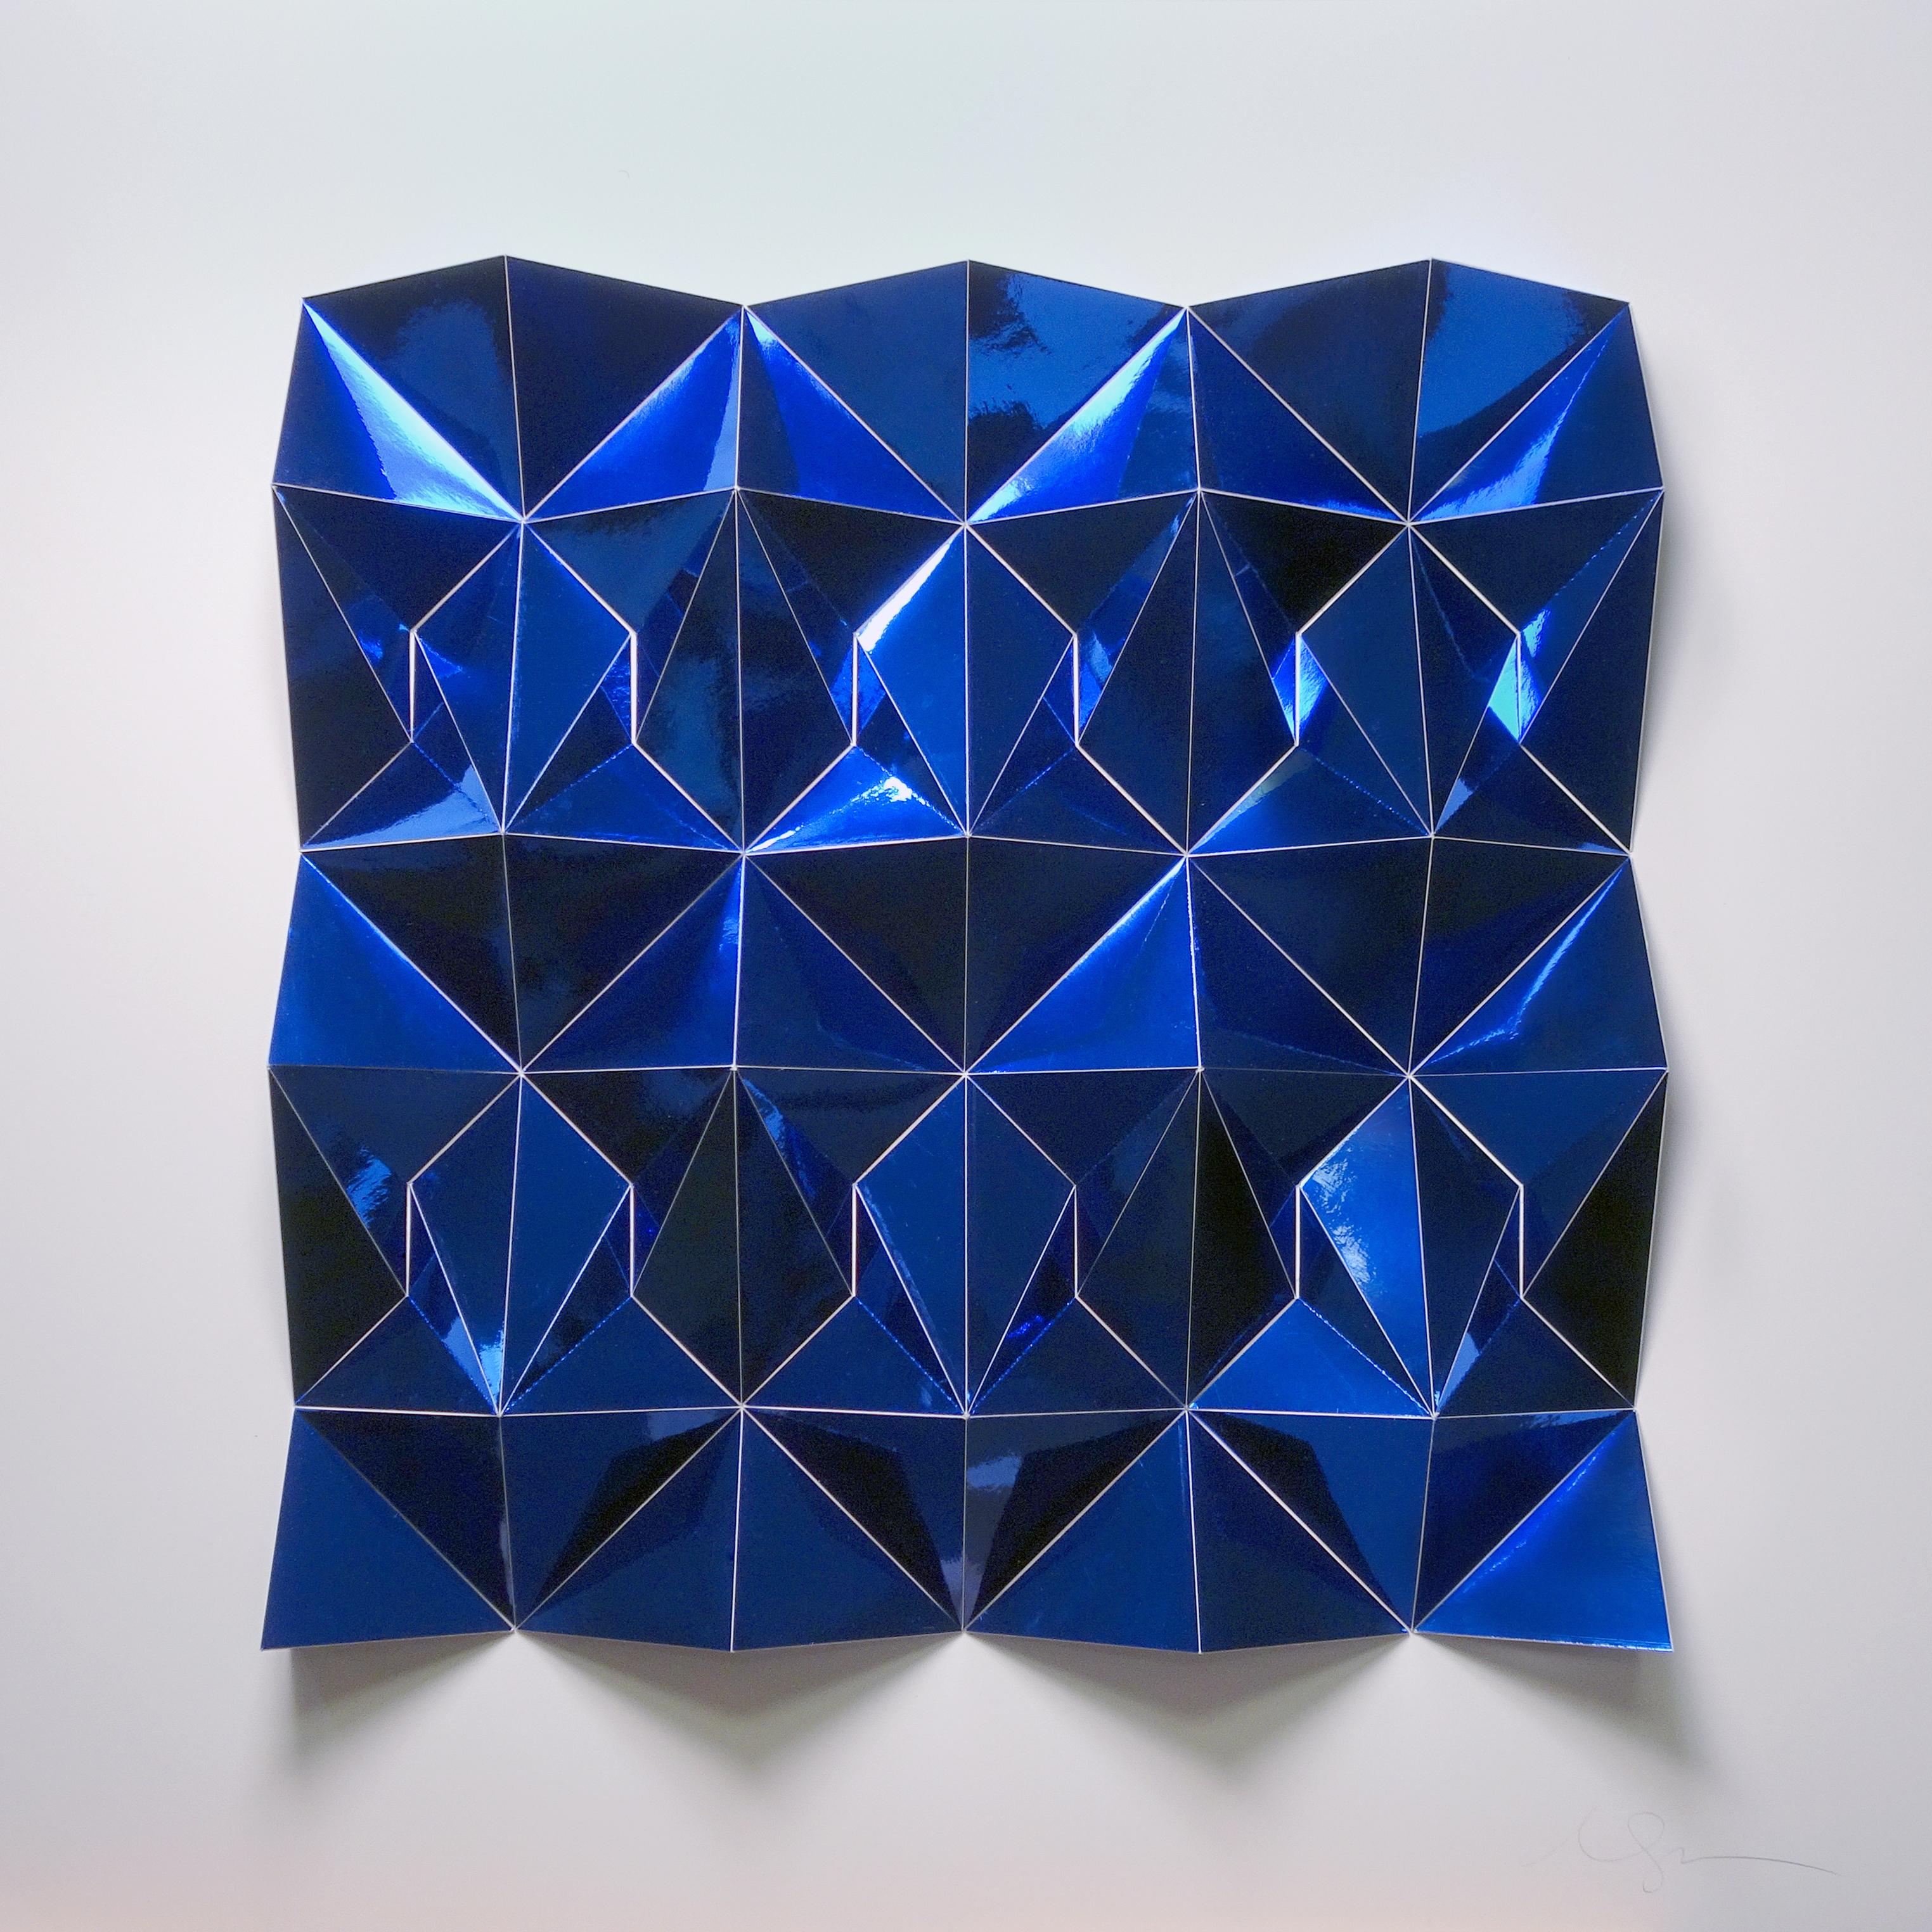 Matt Shlian Abstract Sculpture – Ara 377 in Blau